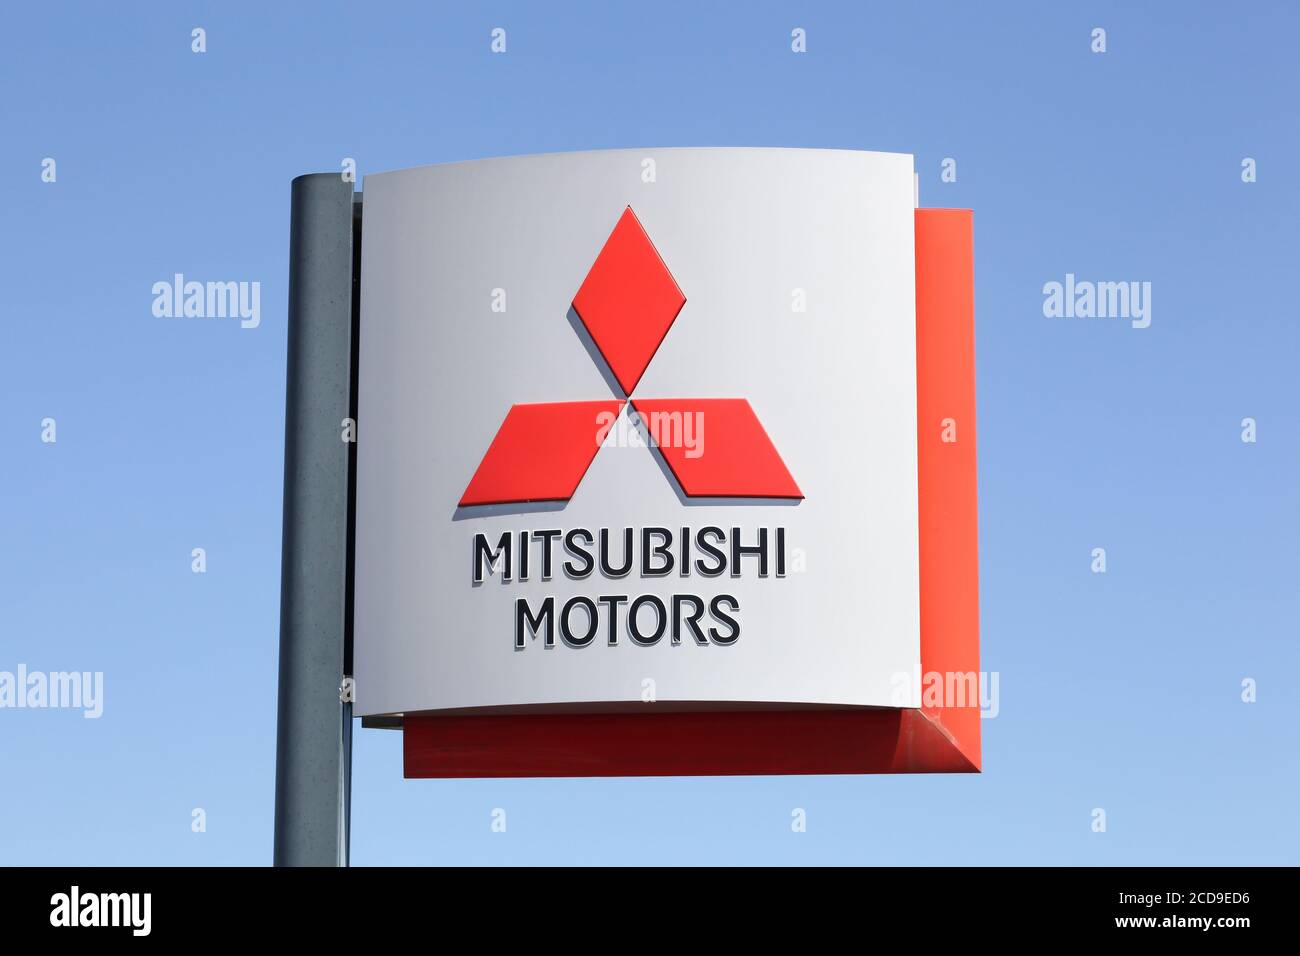 Roanne, France - 31 mai 2020 : logo Mitsubishi sur un panneau. Mitsubishi Motors Corporation est un fabricant automobile multinational Banque D'Images